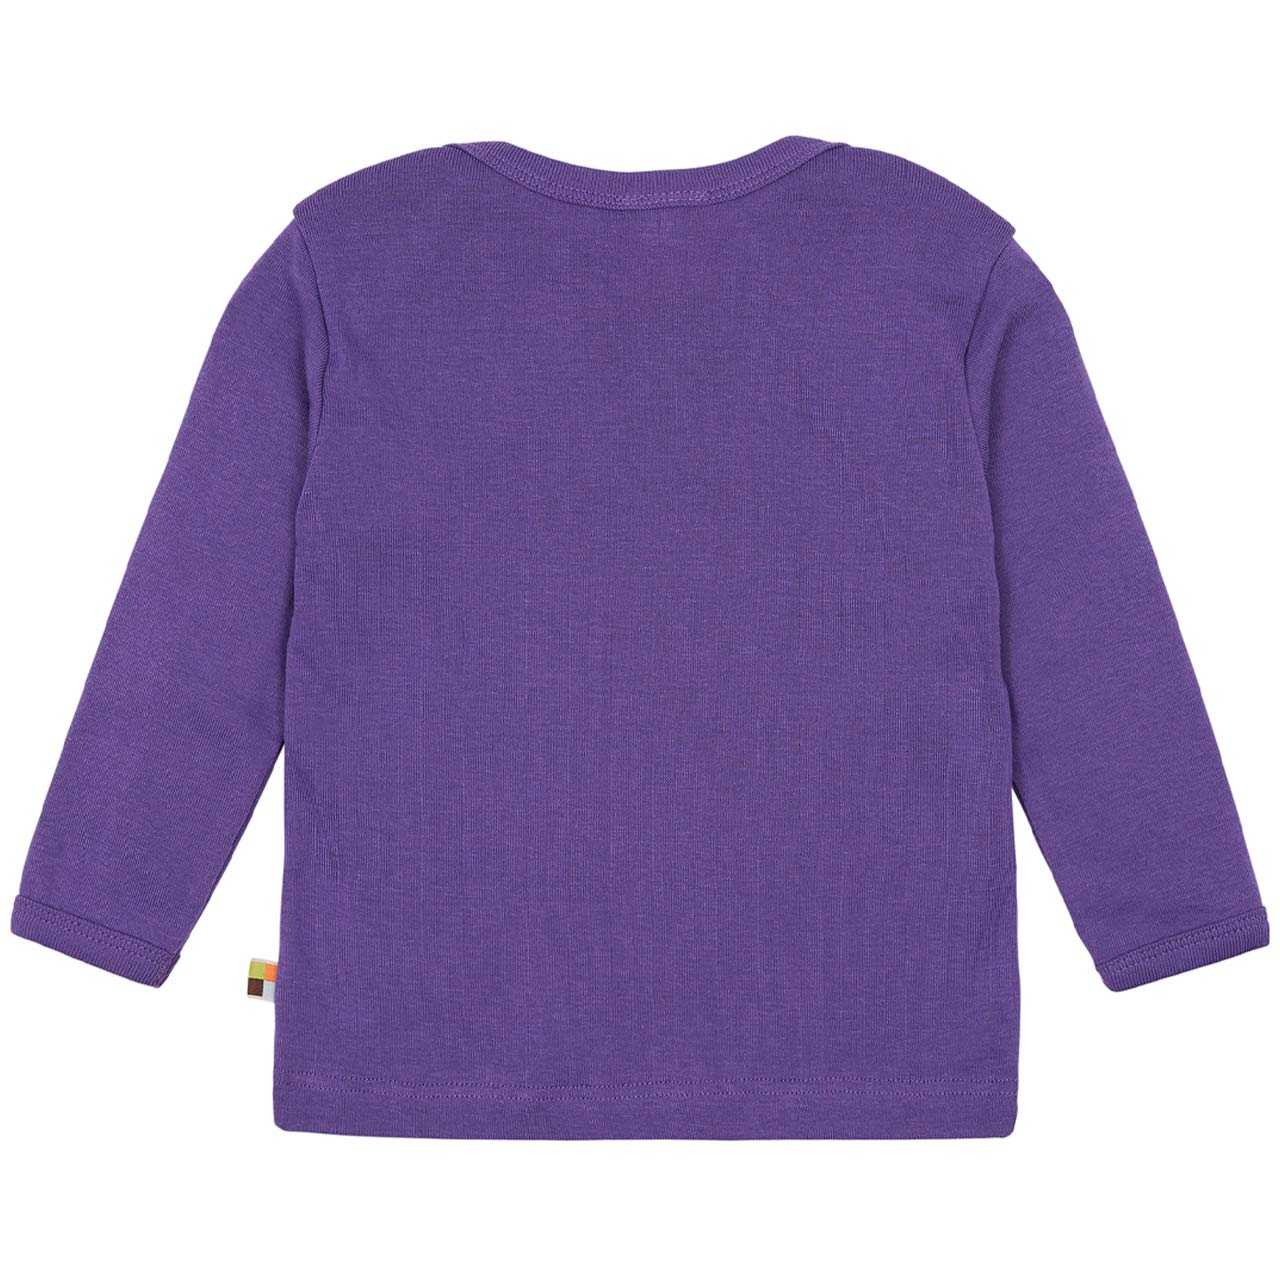 Feinripp Shirt weich und elastisch 100% Baumwolle lila